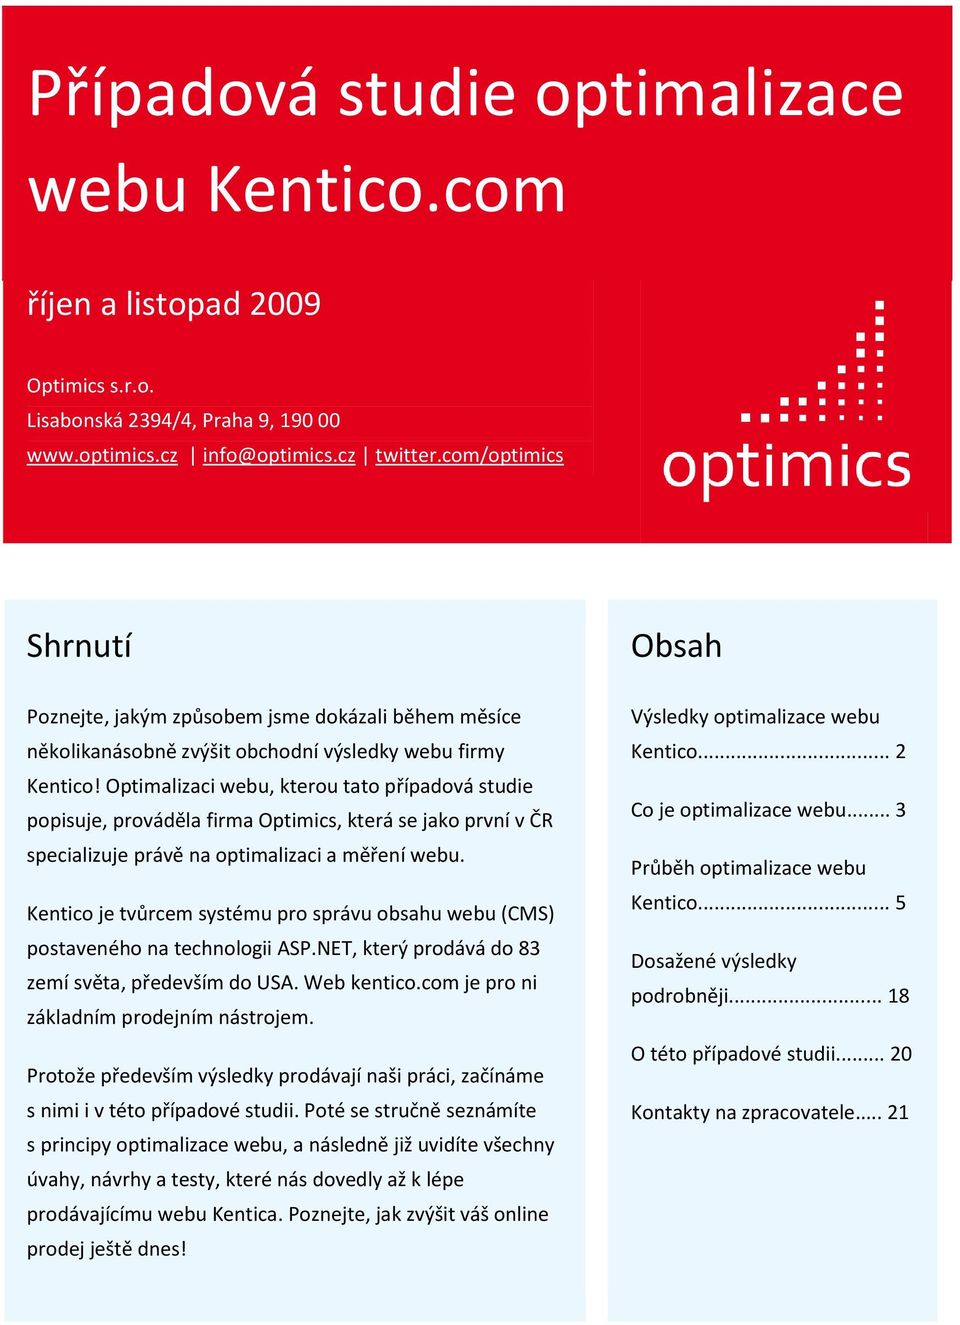 Optimalizaci webu, kterou tato případová studie popisuje, prováděla firma Optimics, která se jako první v ČR specializuje právě na optimalizaci a měření webu.